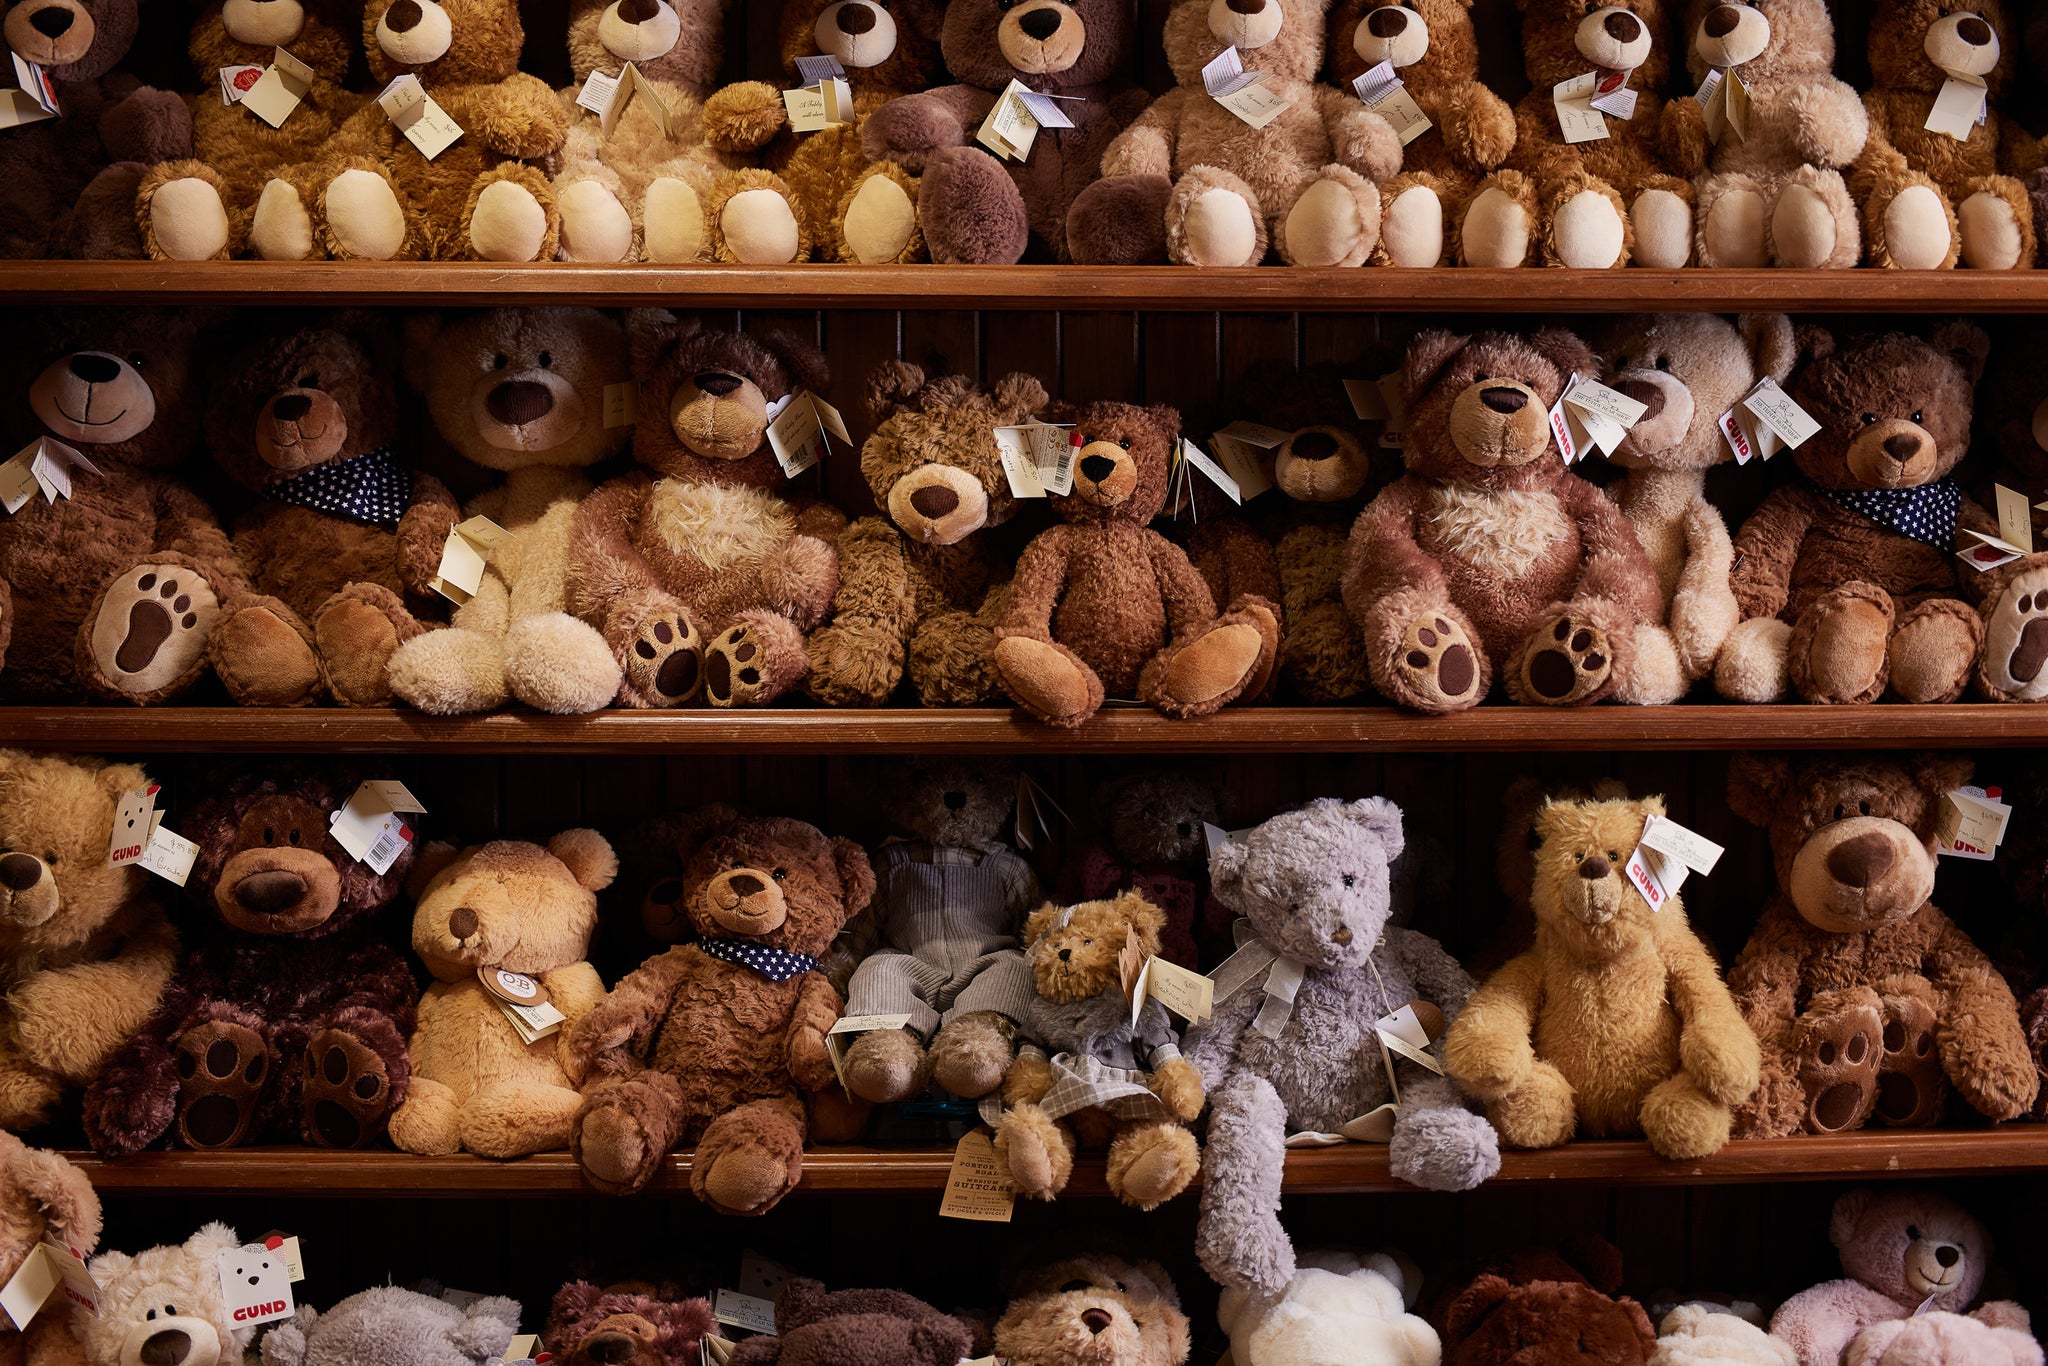 The Teddy Bear Shop Hobart